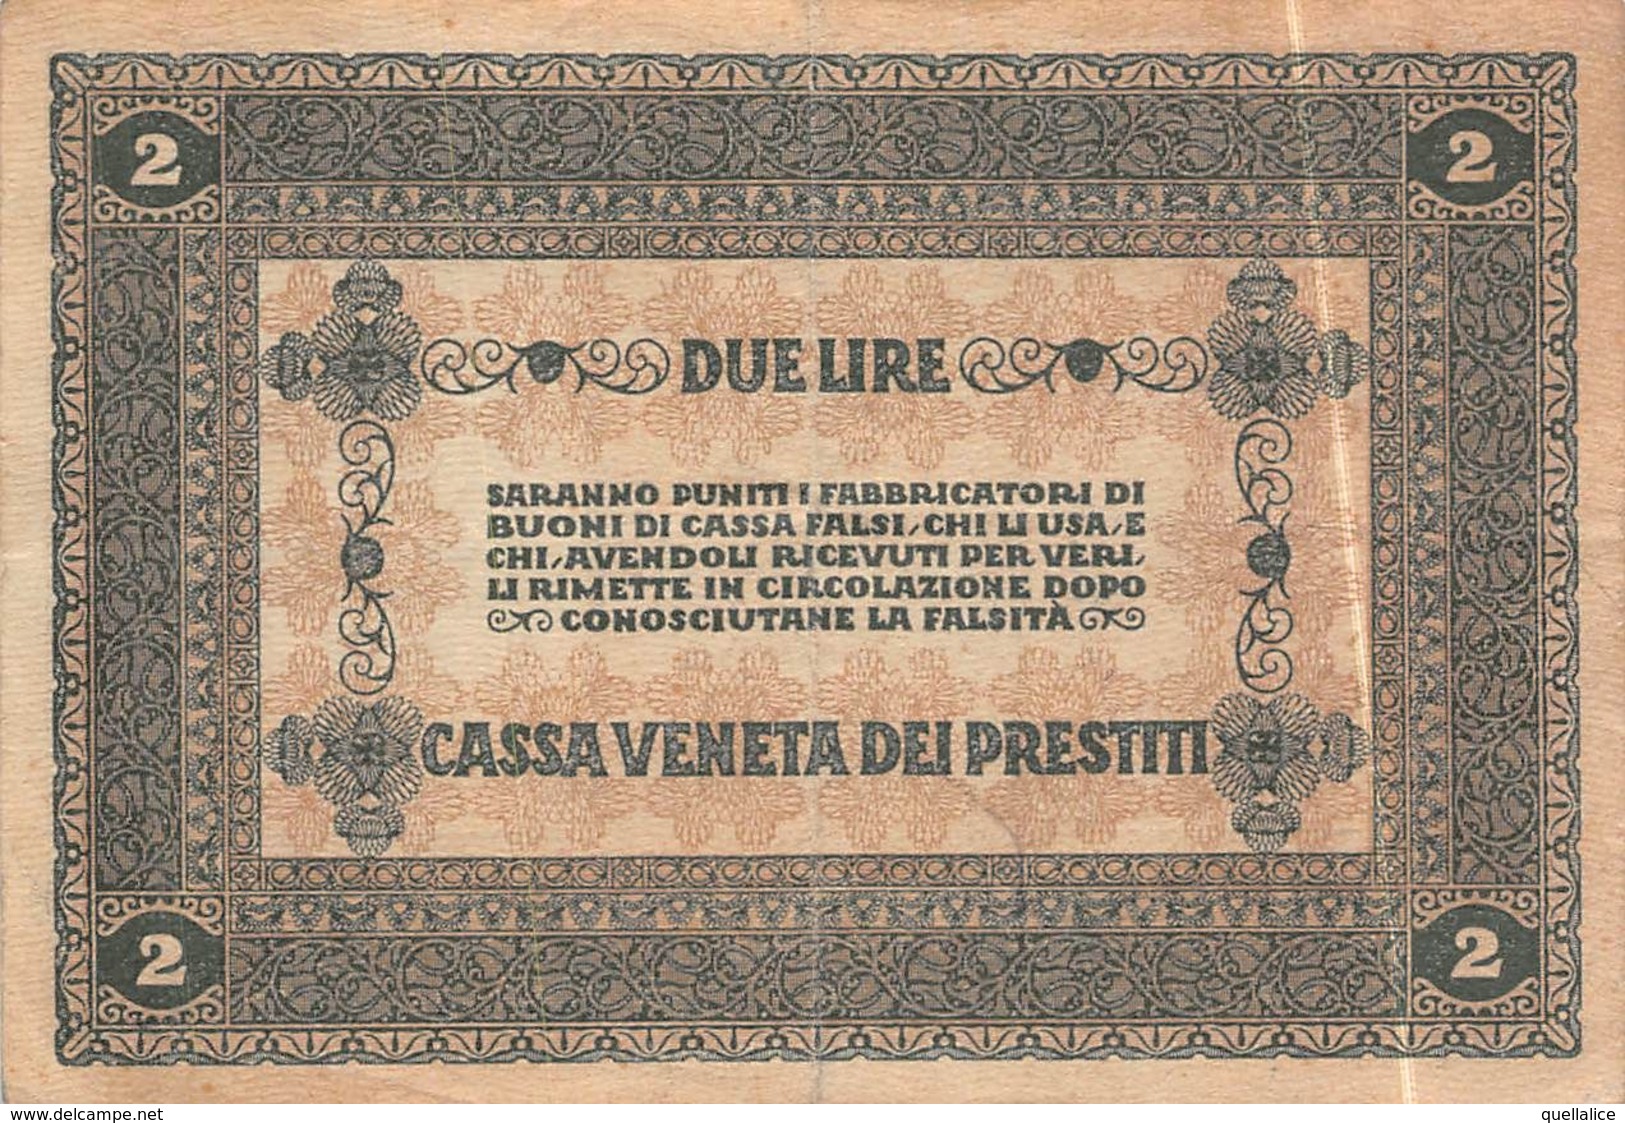 01616 "CASSA VENETA DEI PRESTITI - 2 GENNAIO 1918 - BUONO CASSA A CORSO LEGALE DA DUE LIRE" ORIGINALE - [10] Cheques Y Mini-cheques